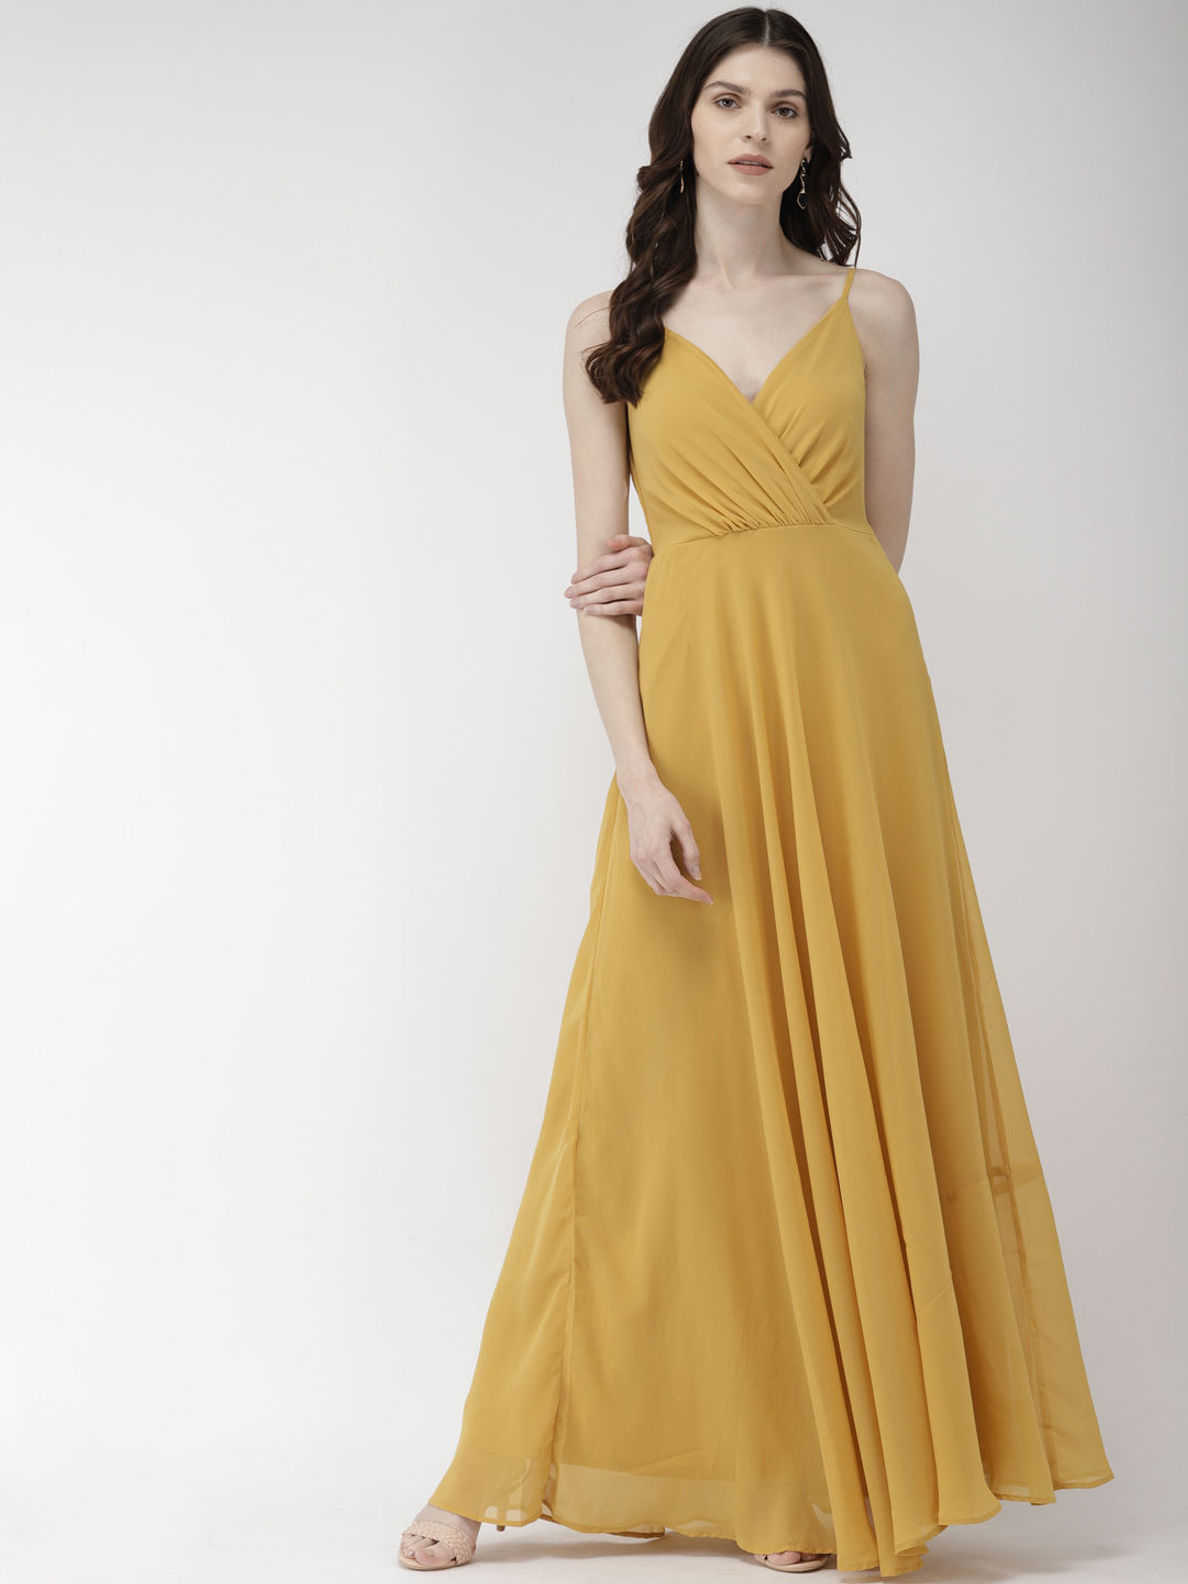 Print rose yellow fashion dress  Boldiva